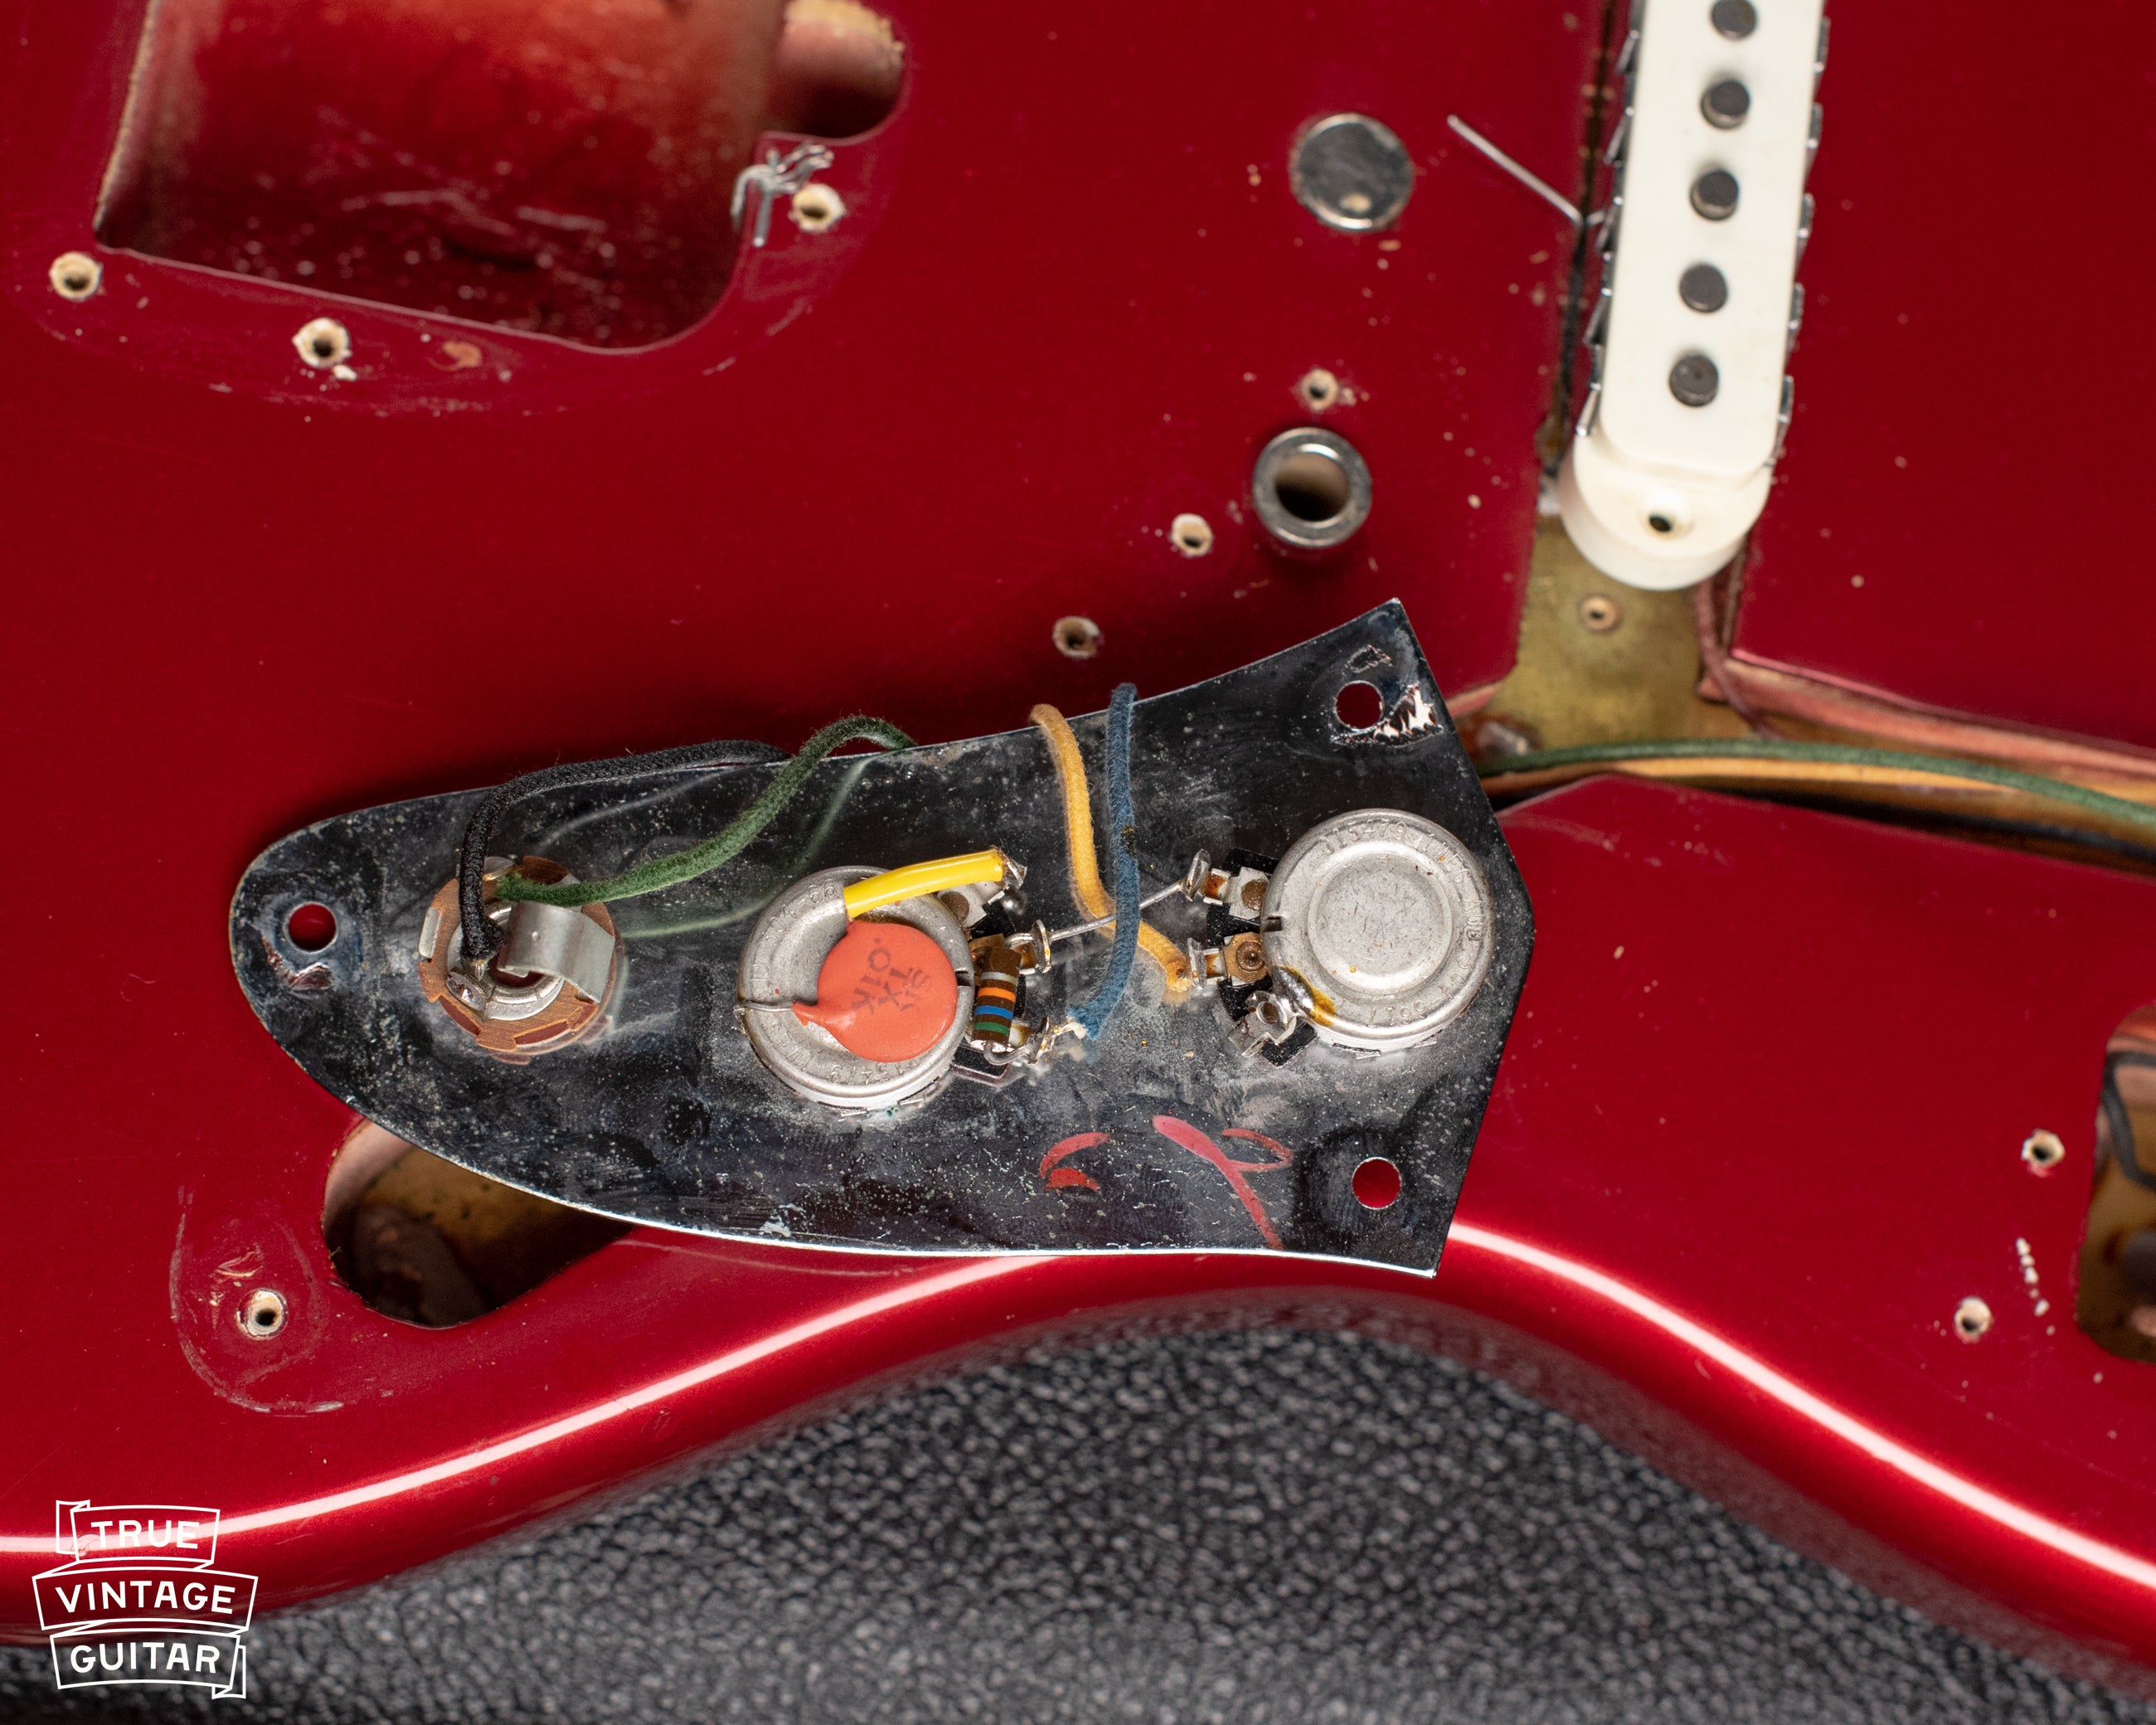 How to date Fender Jaguar guitar potentiometers